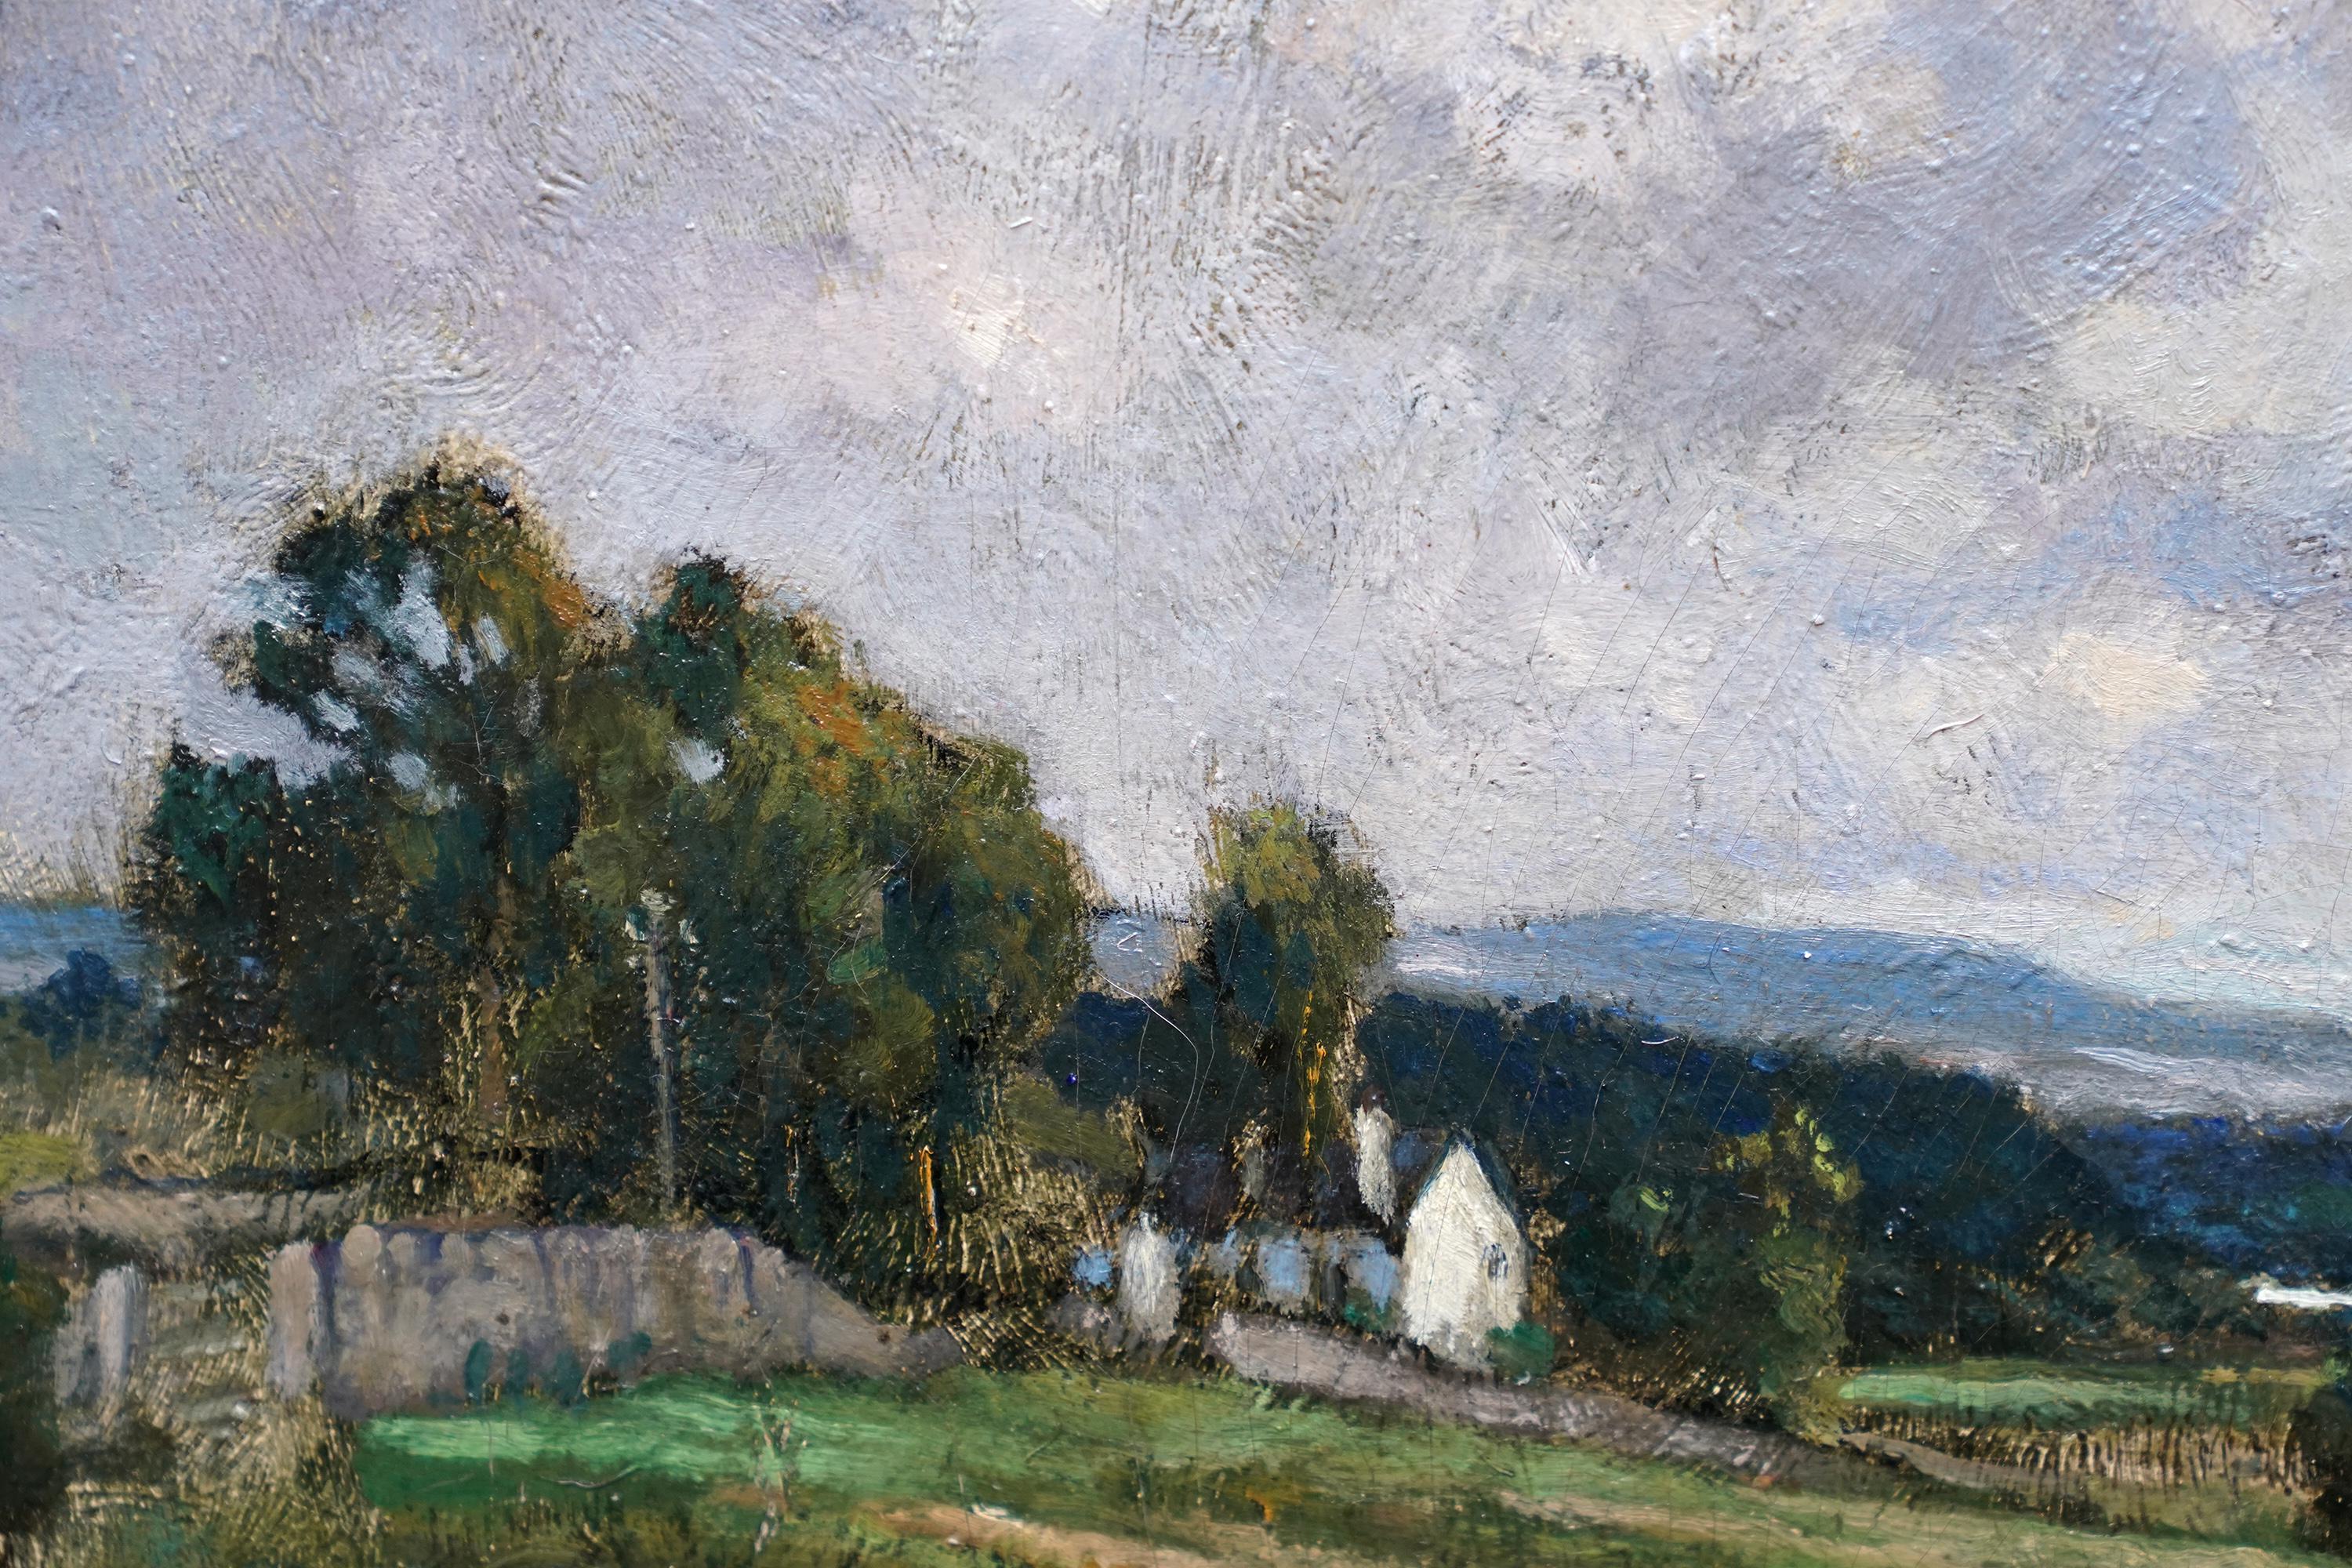 Cette magnifique peinture à l'huile de paysage impressionniste britannique est l'œuvre de Bertram Priestman, artiste estimé du Yorkshire, et a été peinte en 1919. Il s'agit de Wharfdale, la vallée des parties supérieures de la rivière Wharfe, qui